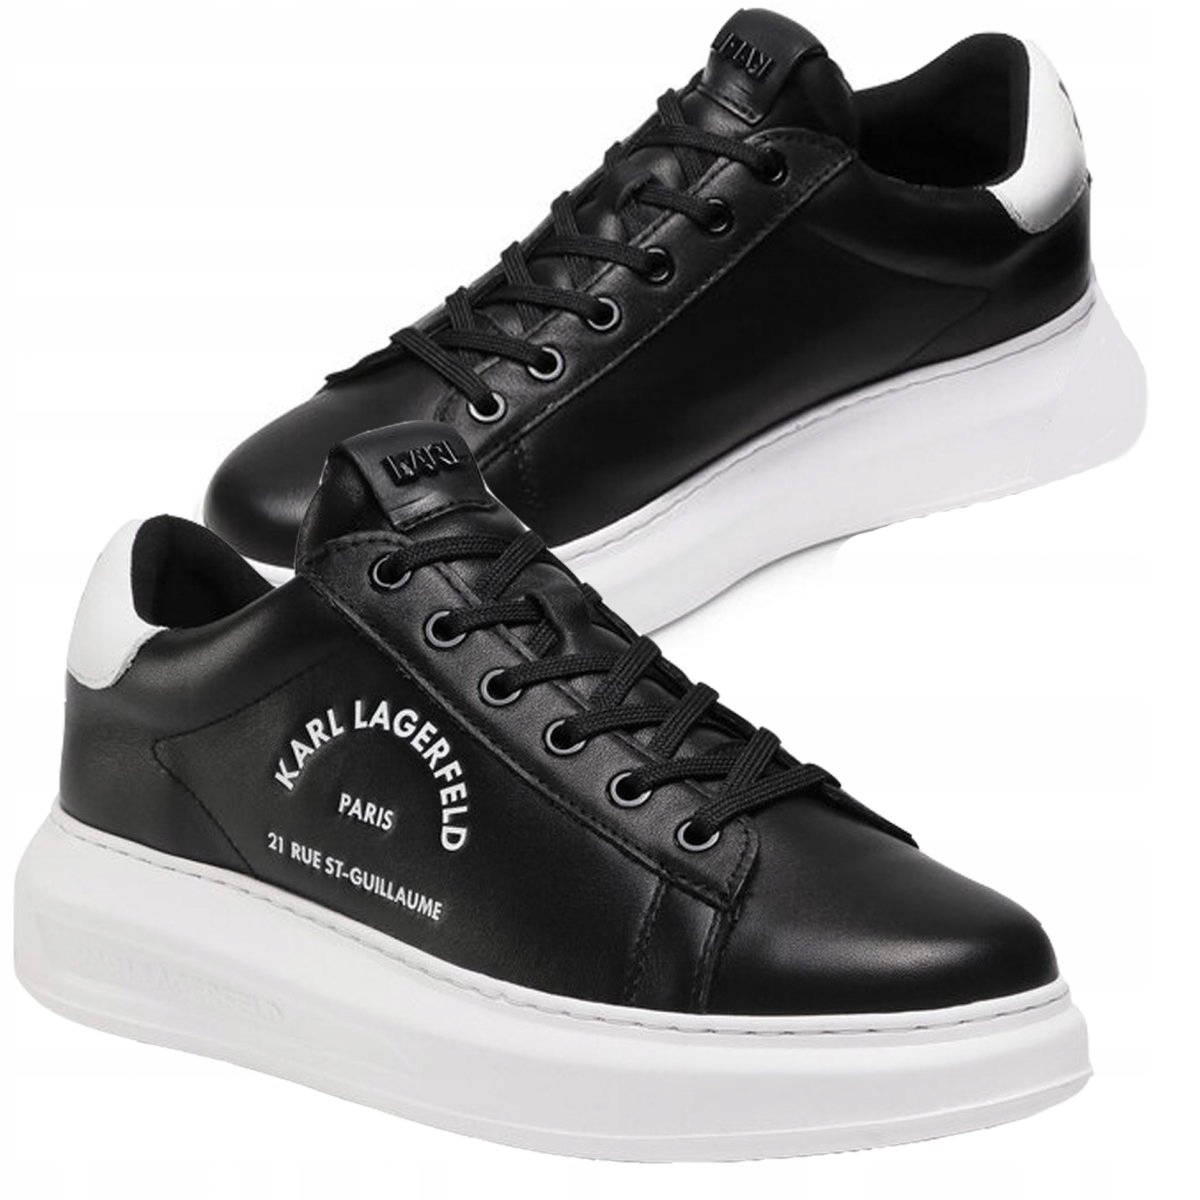 Karl Lagerfeld pánska obuv koža čierne logo KL52538-000 43